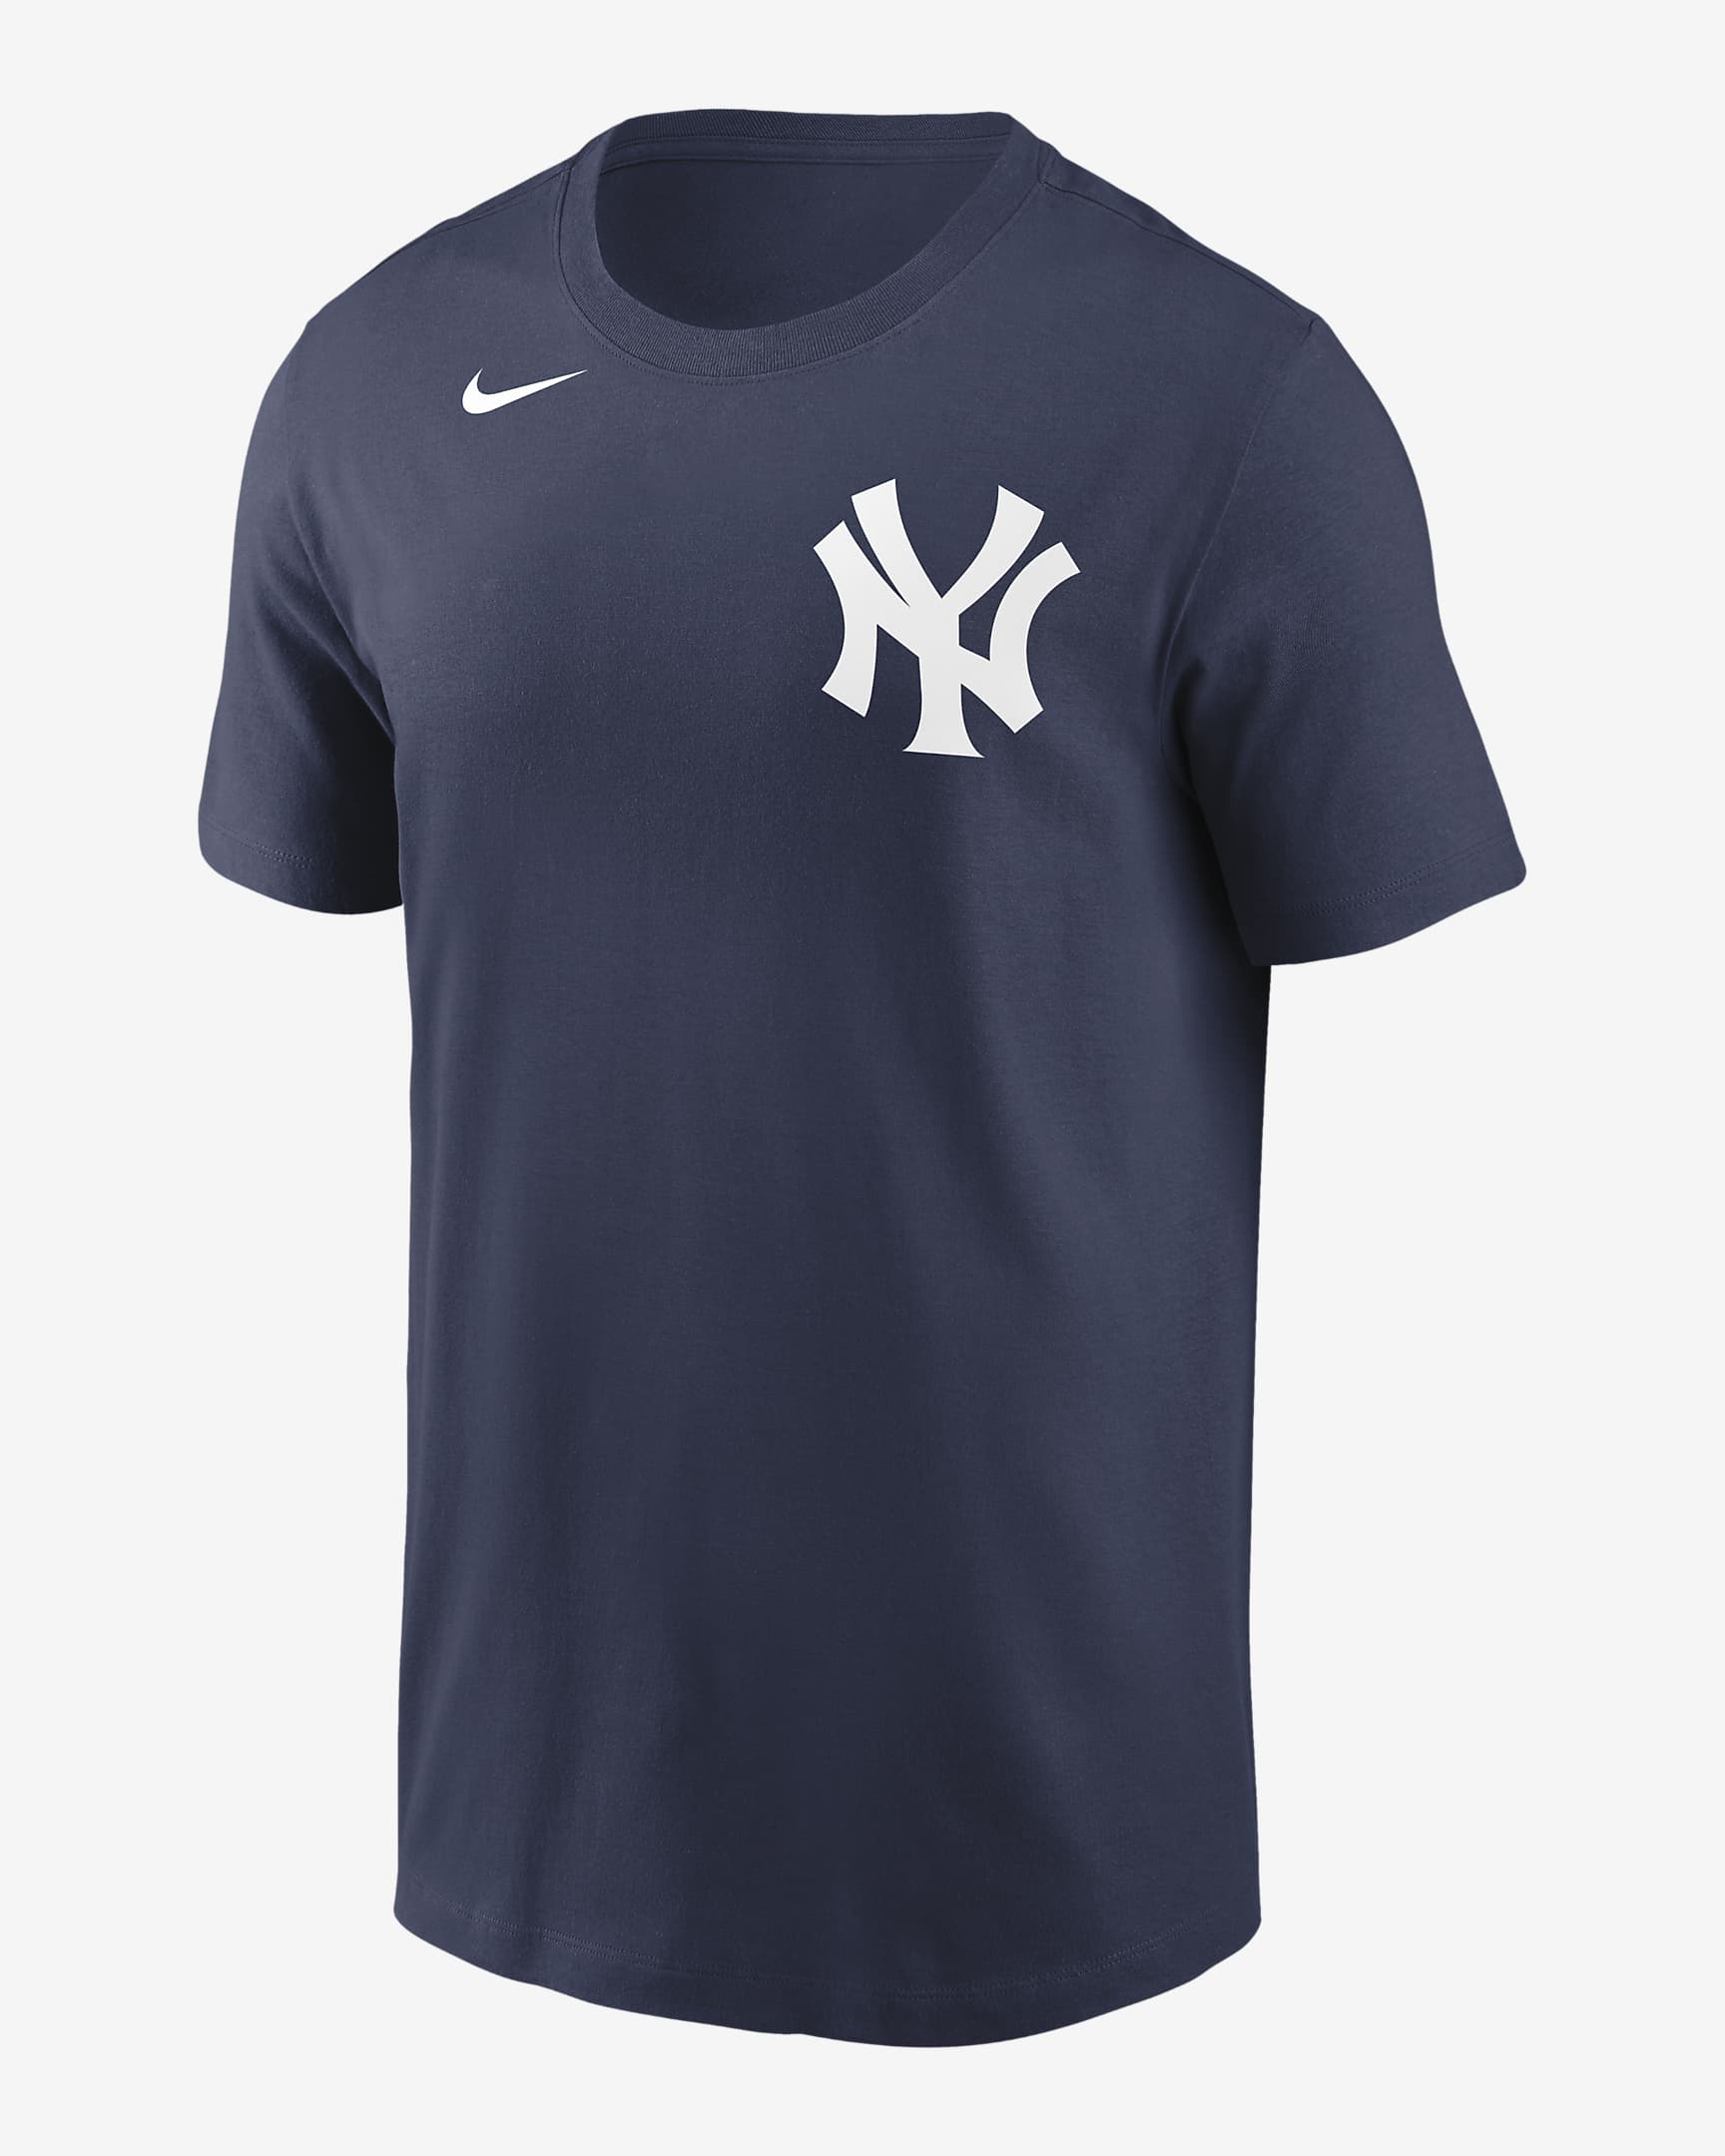 MLB New York Yankees (Luke Voit) Men's T-Shirt. Nike.com